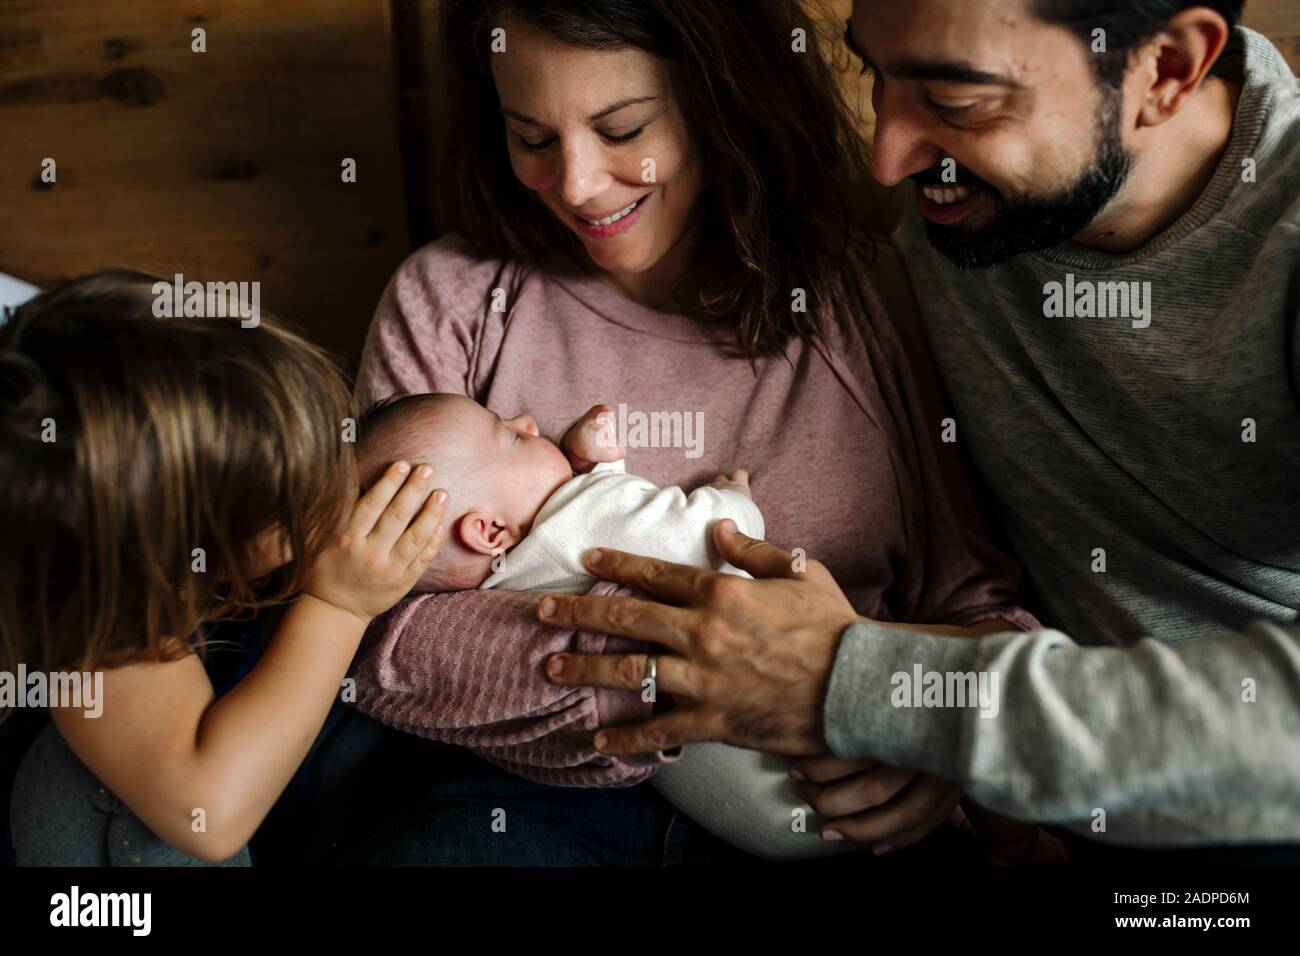 Family love embracing newborn baby Stock Photo